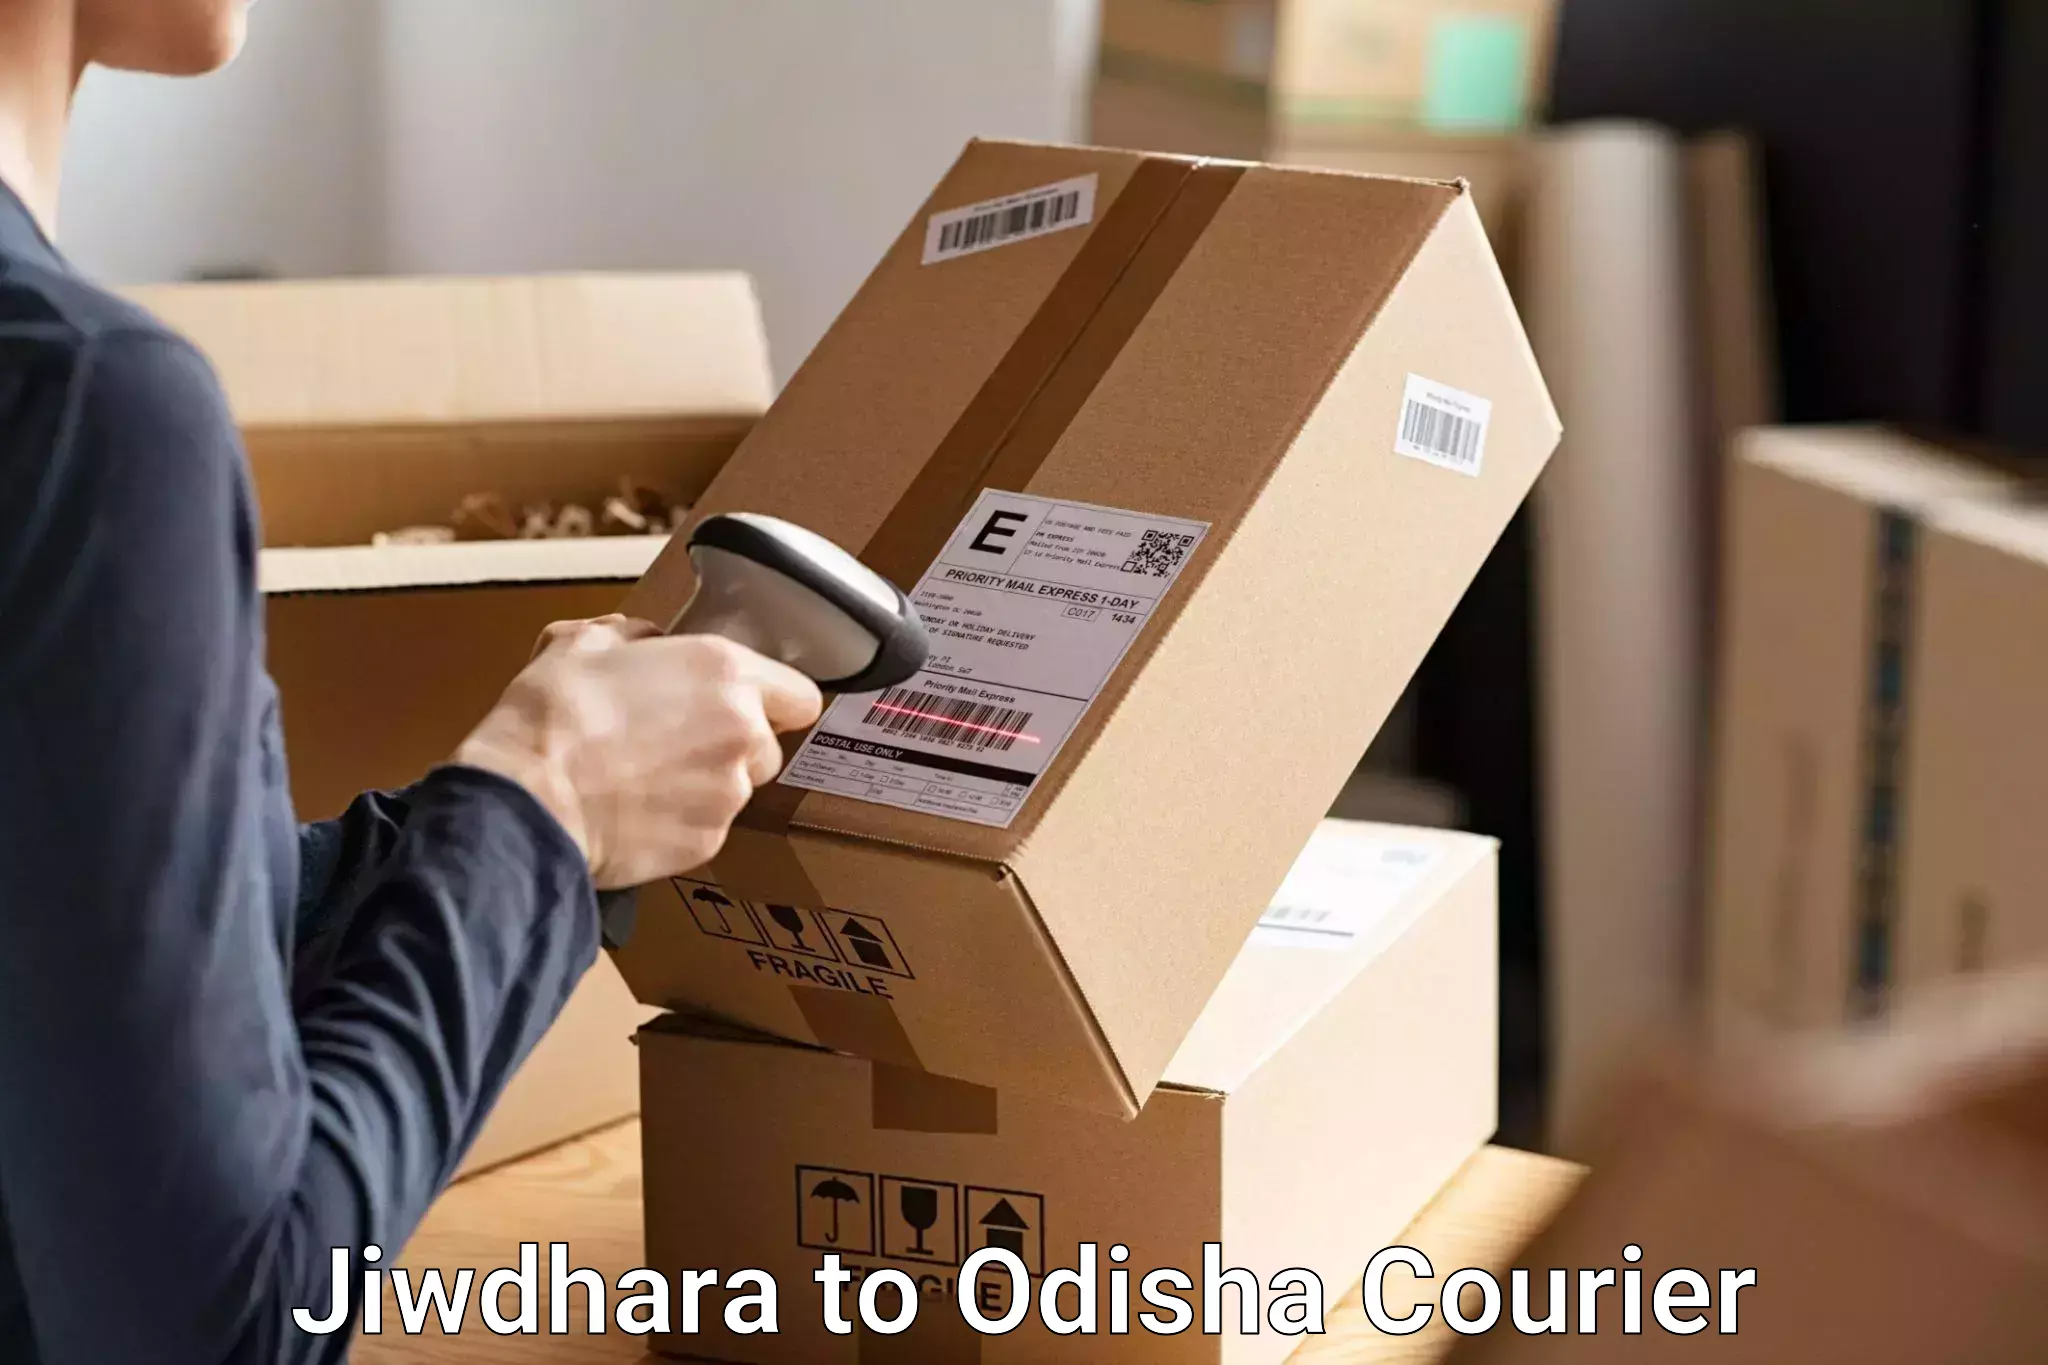 Baggage shipping service Jiwdhara to Muniguda